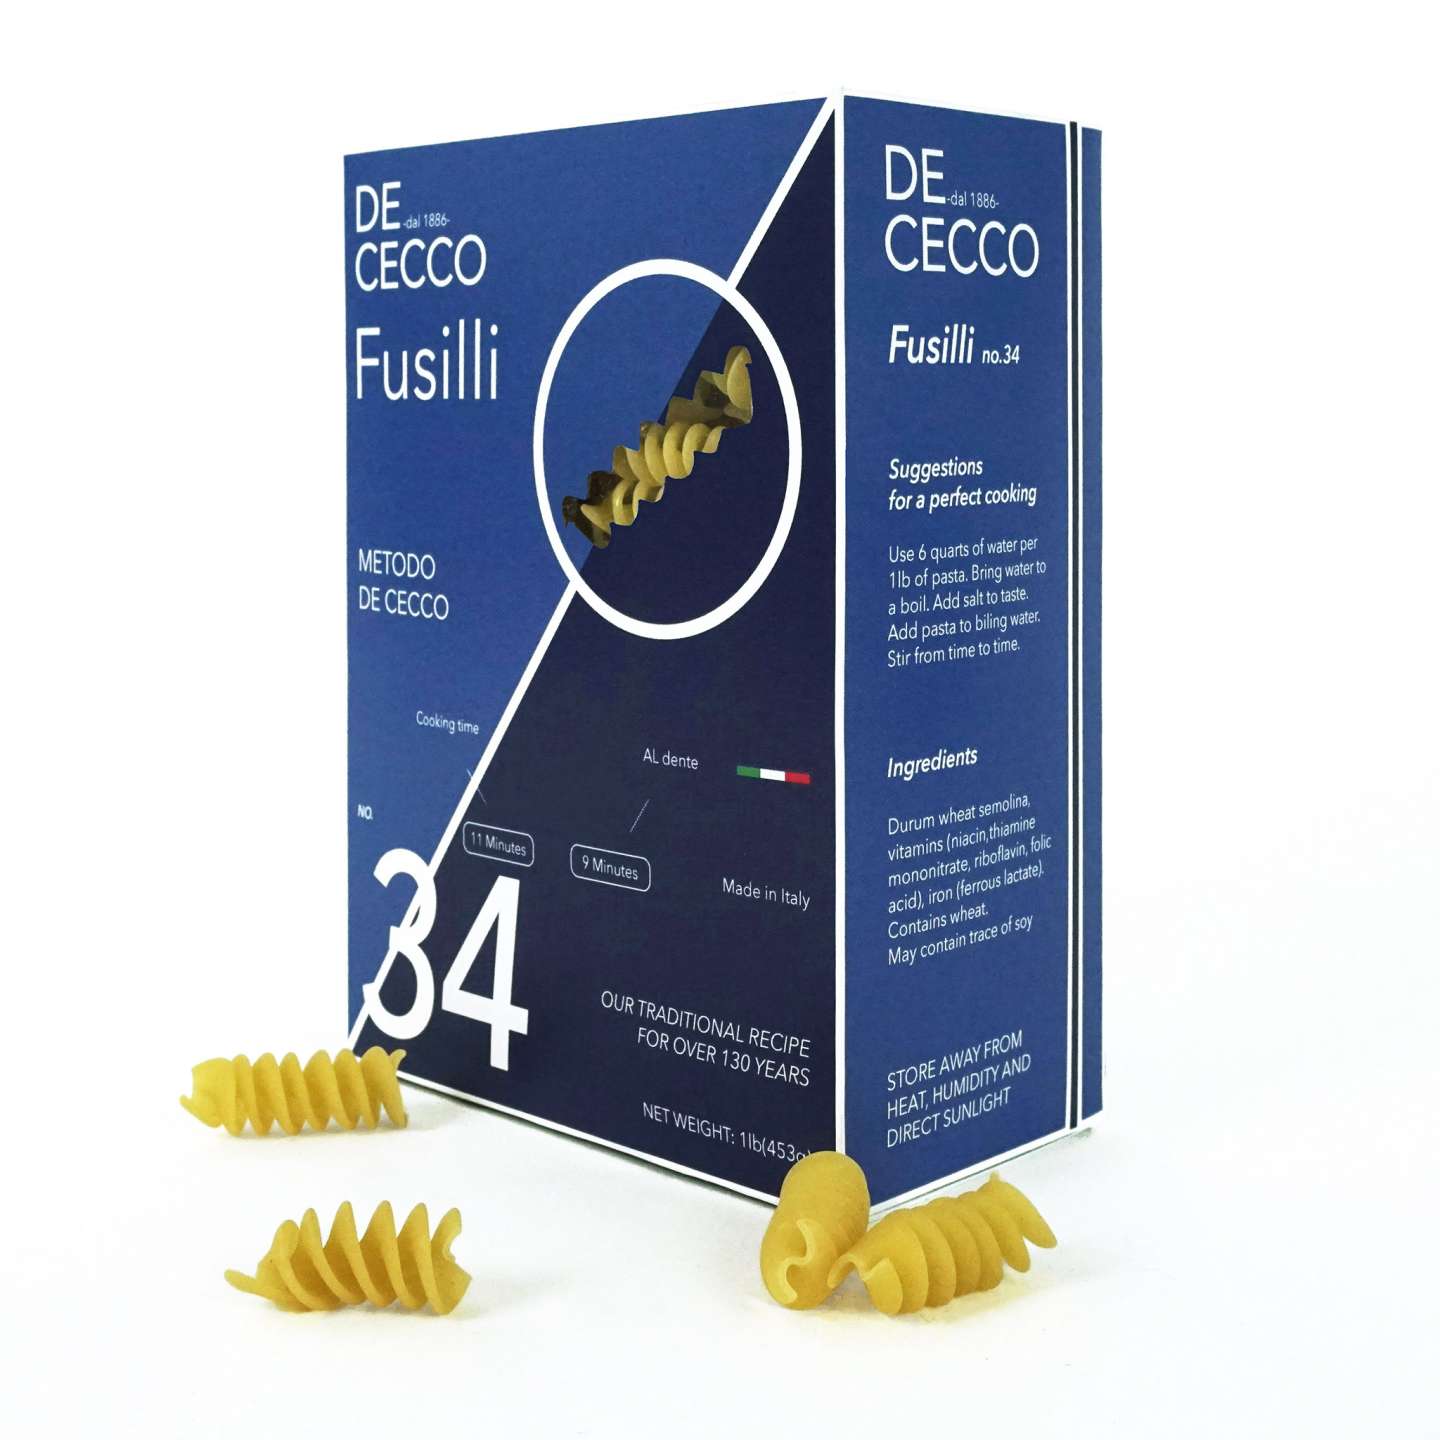 De Cecco Packaging Design